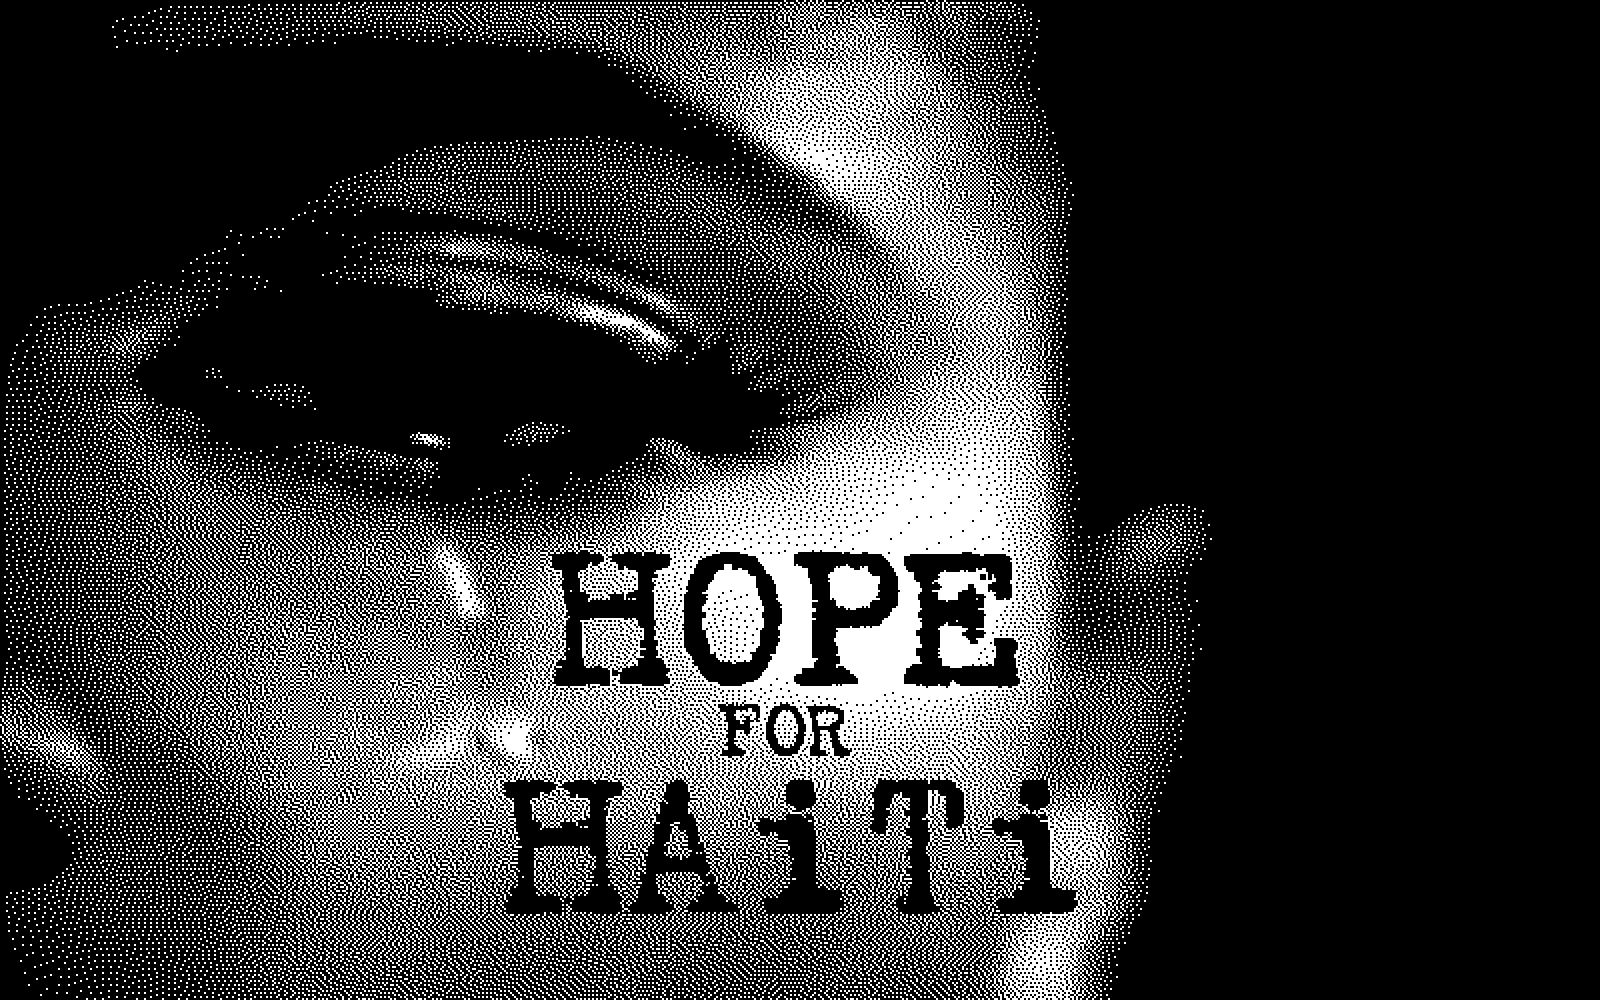 Raising Funds for Haiti Relief